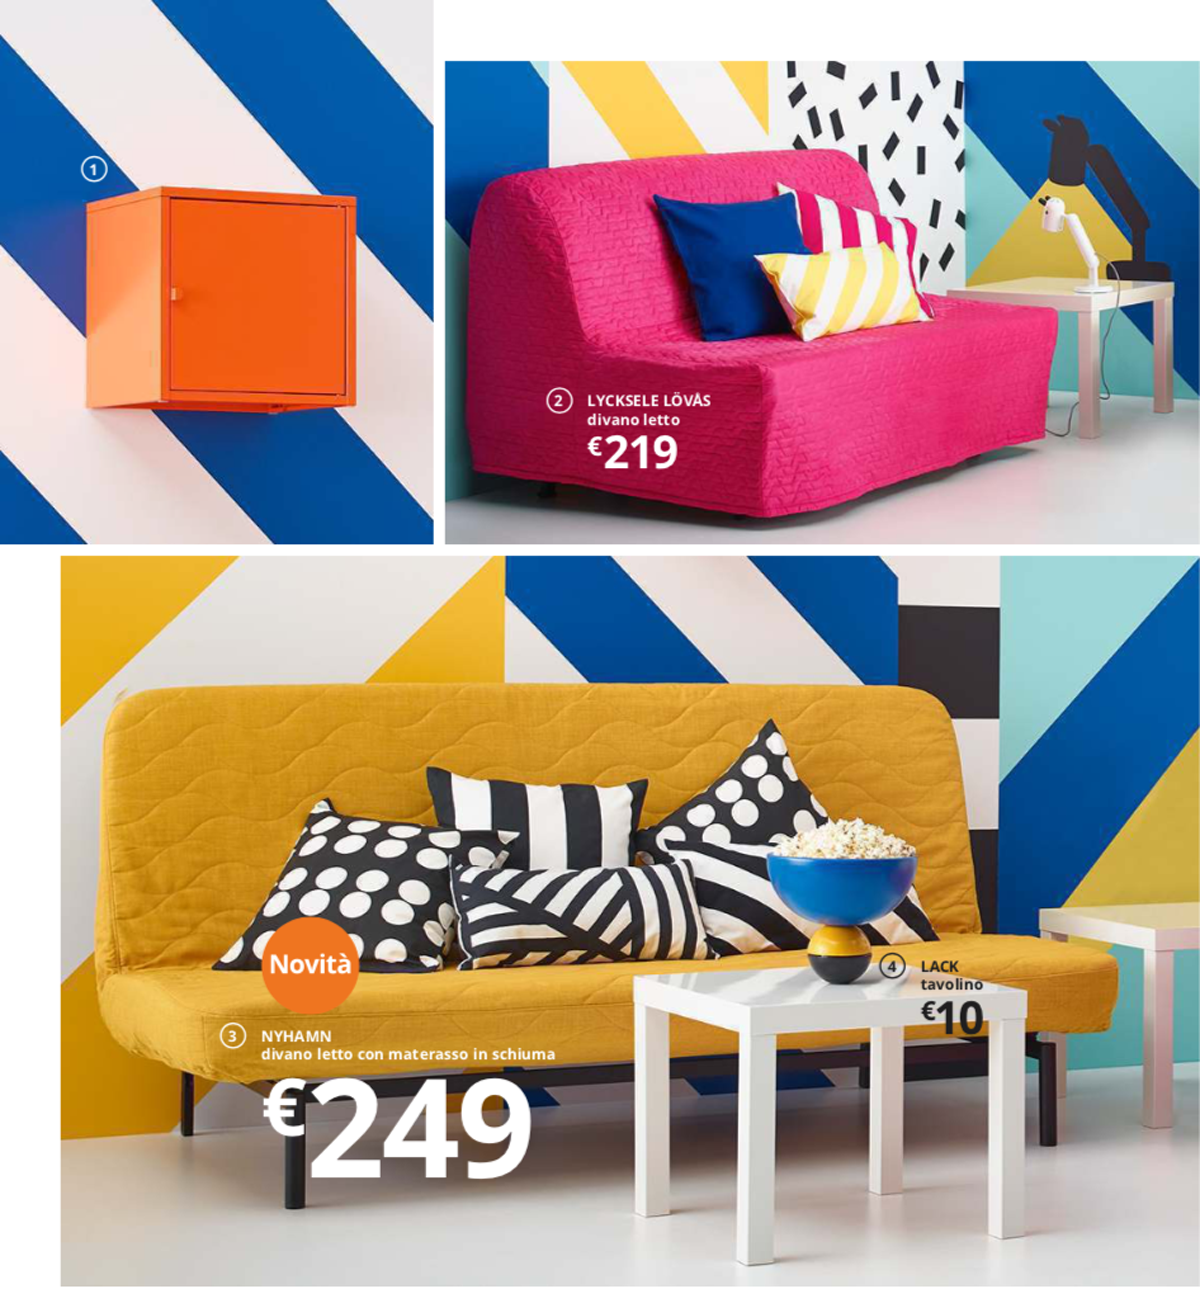 Idee Regalo Natale Ikea 2020.Catalogo Ikea 2020 I Dubbi Che Ha Suscitato E Quello Che A Me E Piaciuto